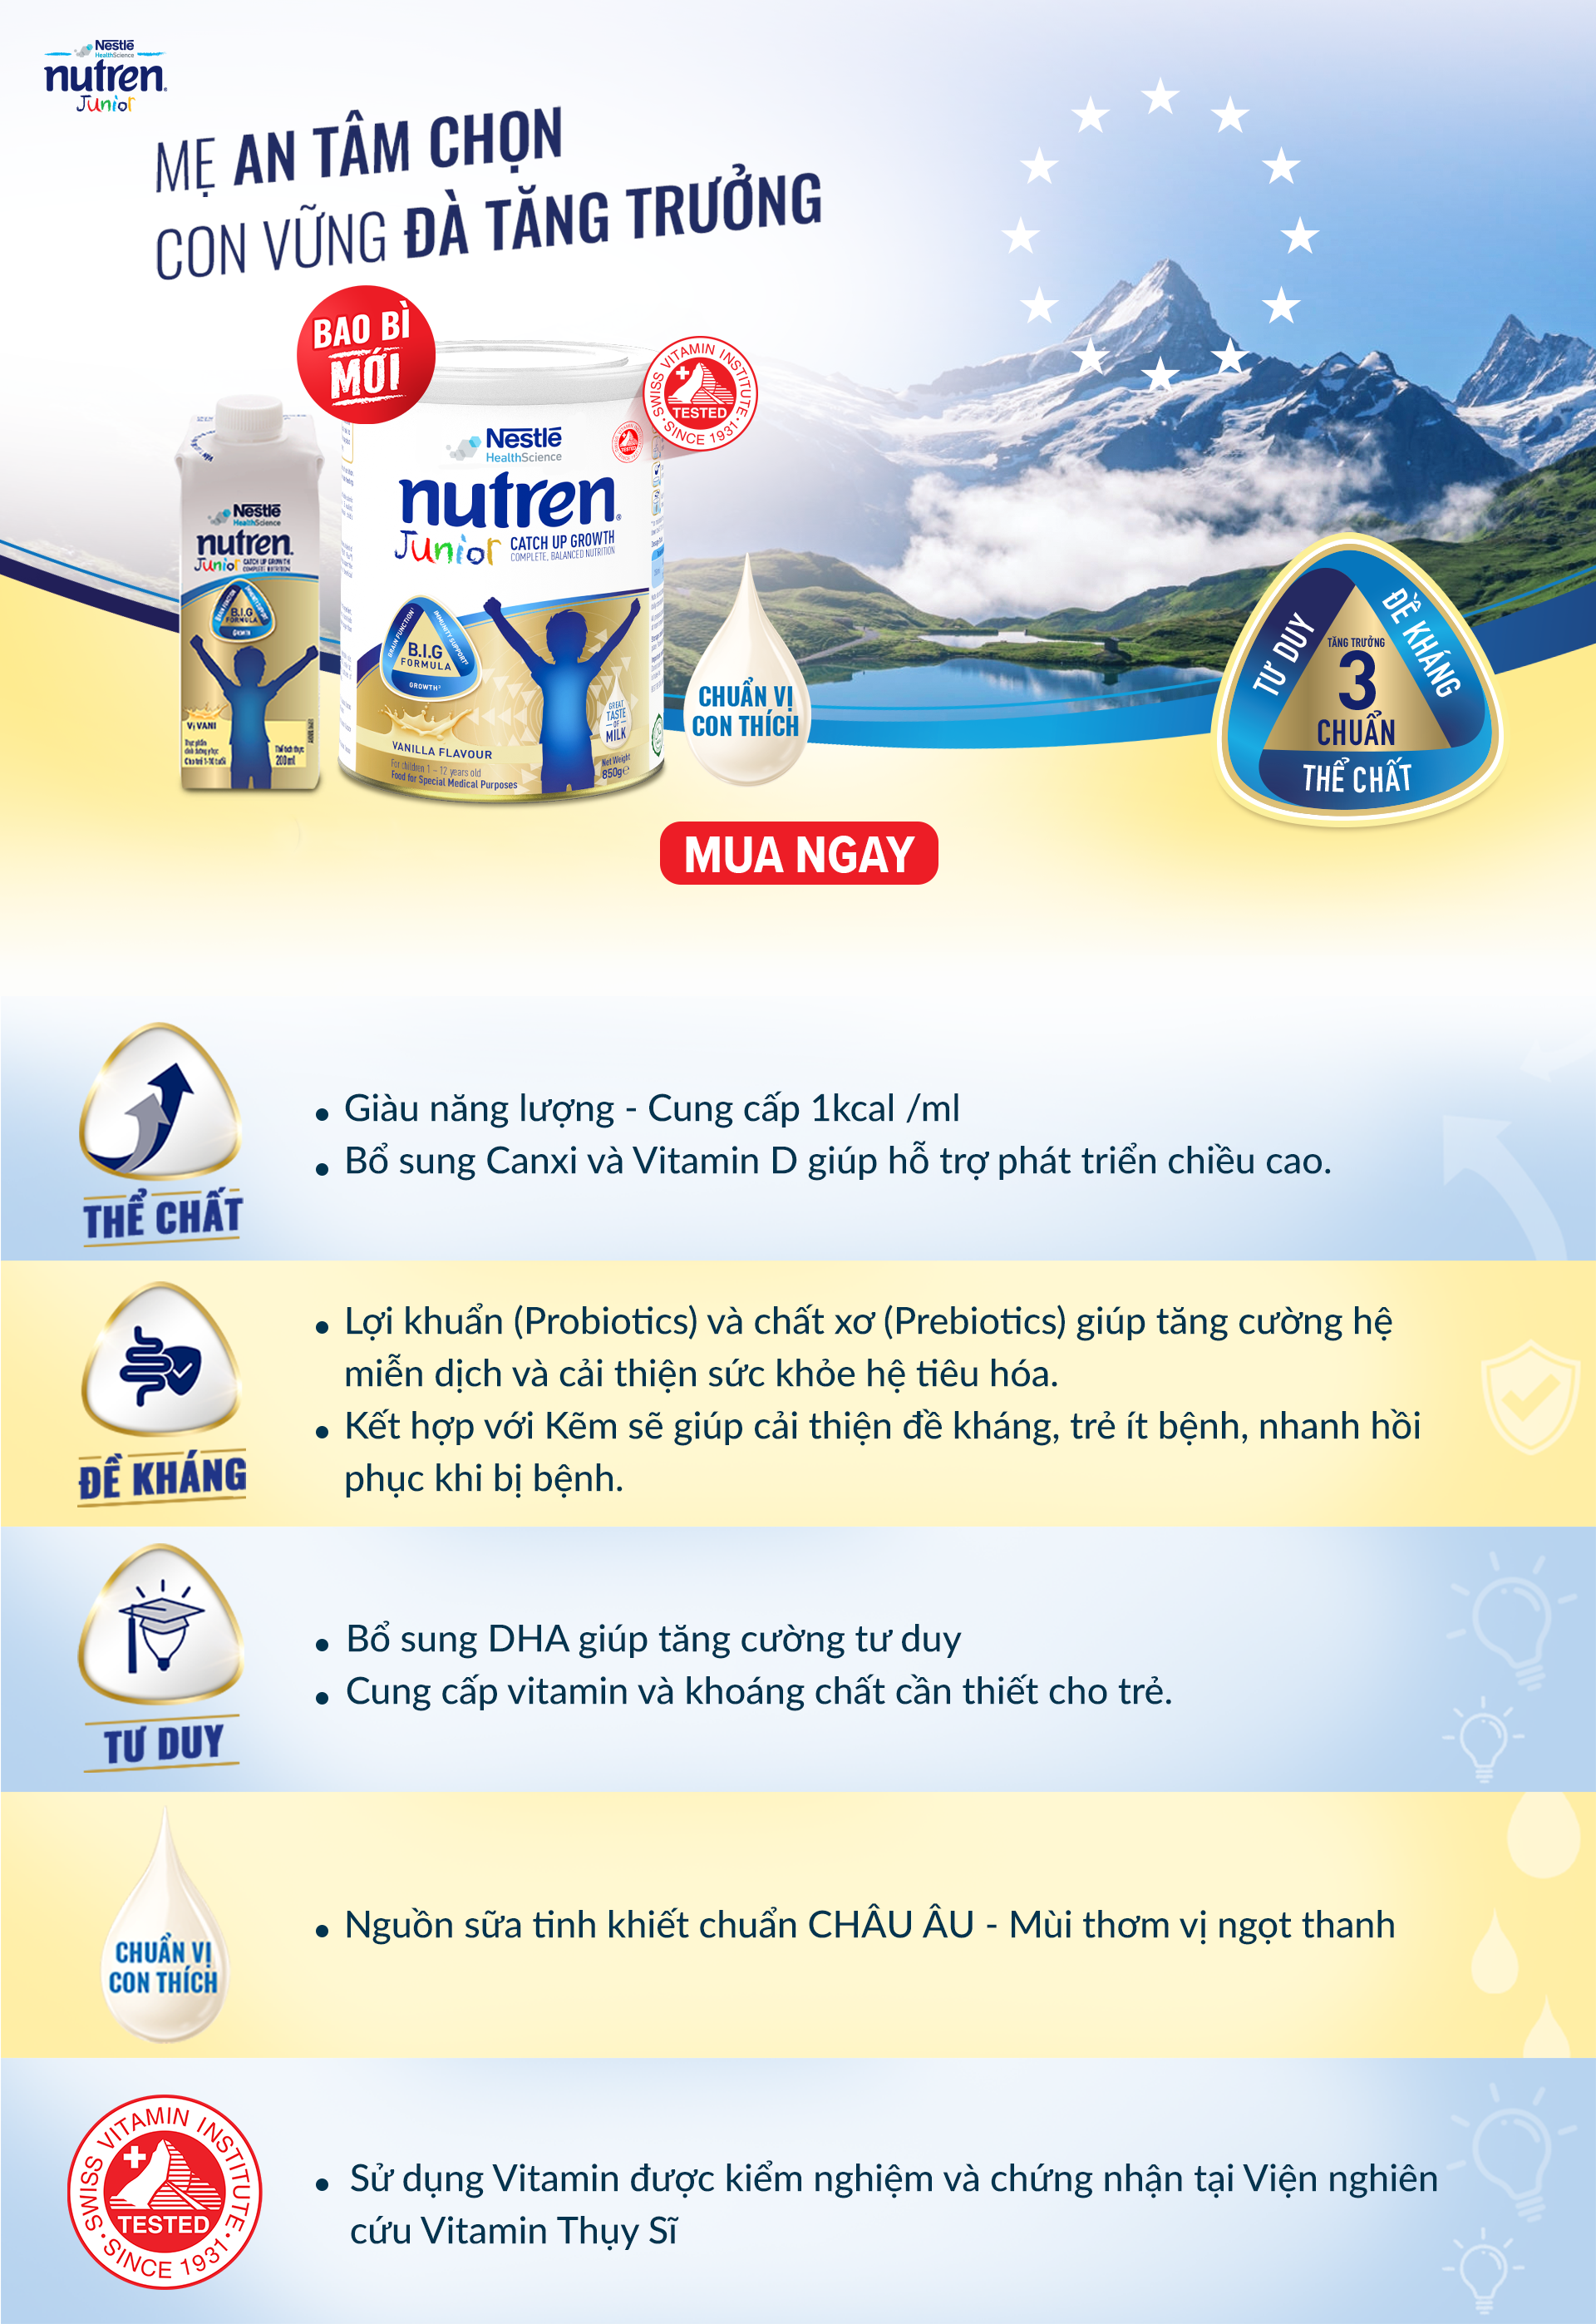 Nutren Junior - Dinh dưỡng chuyên biệt cho trẻ nhẹ cân, thấp còi